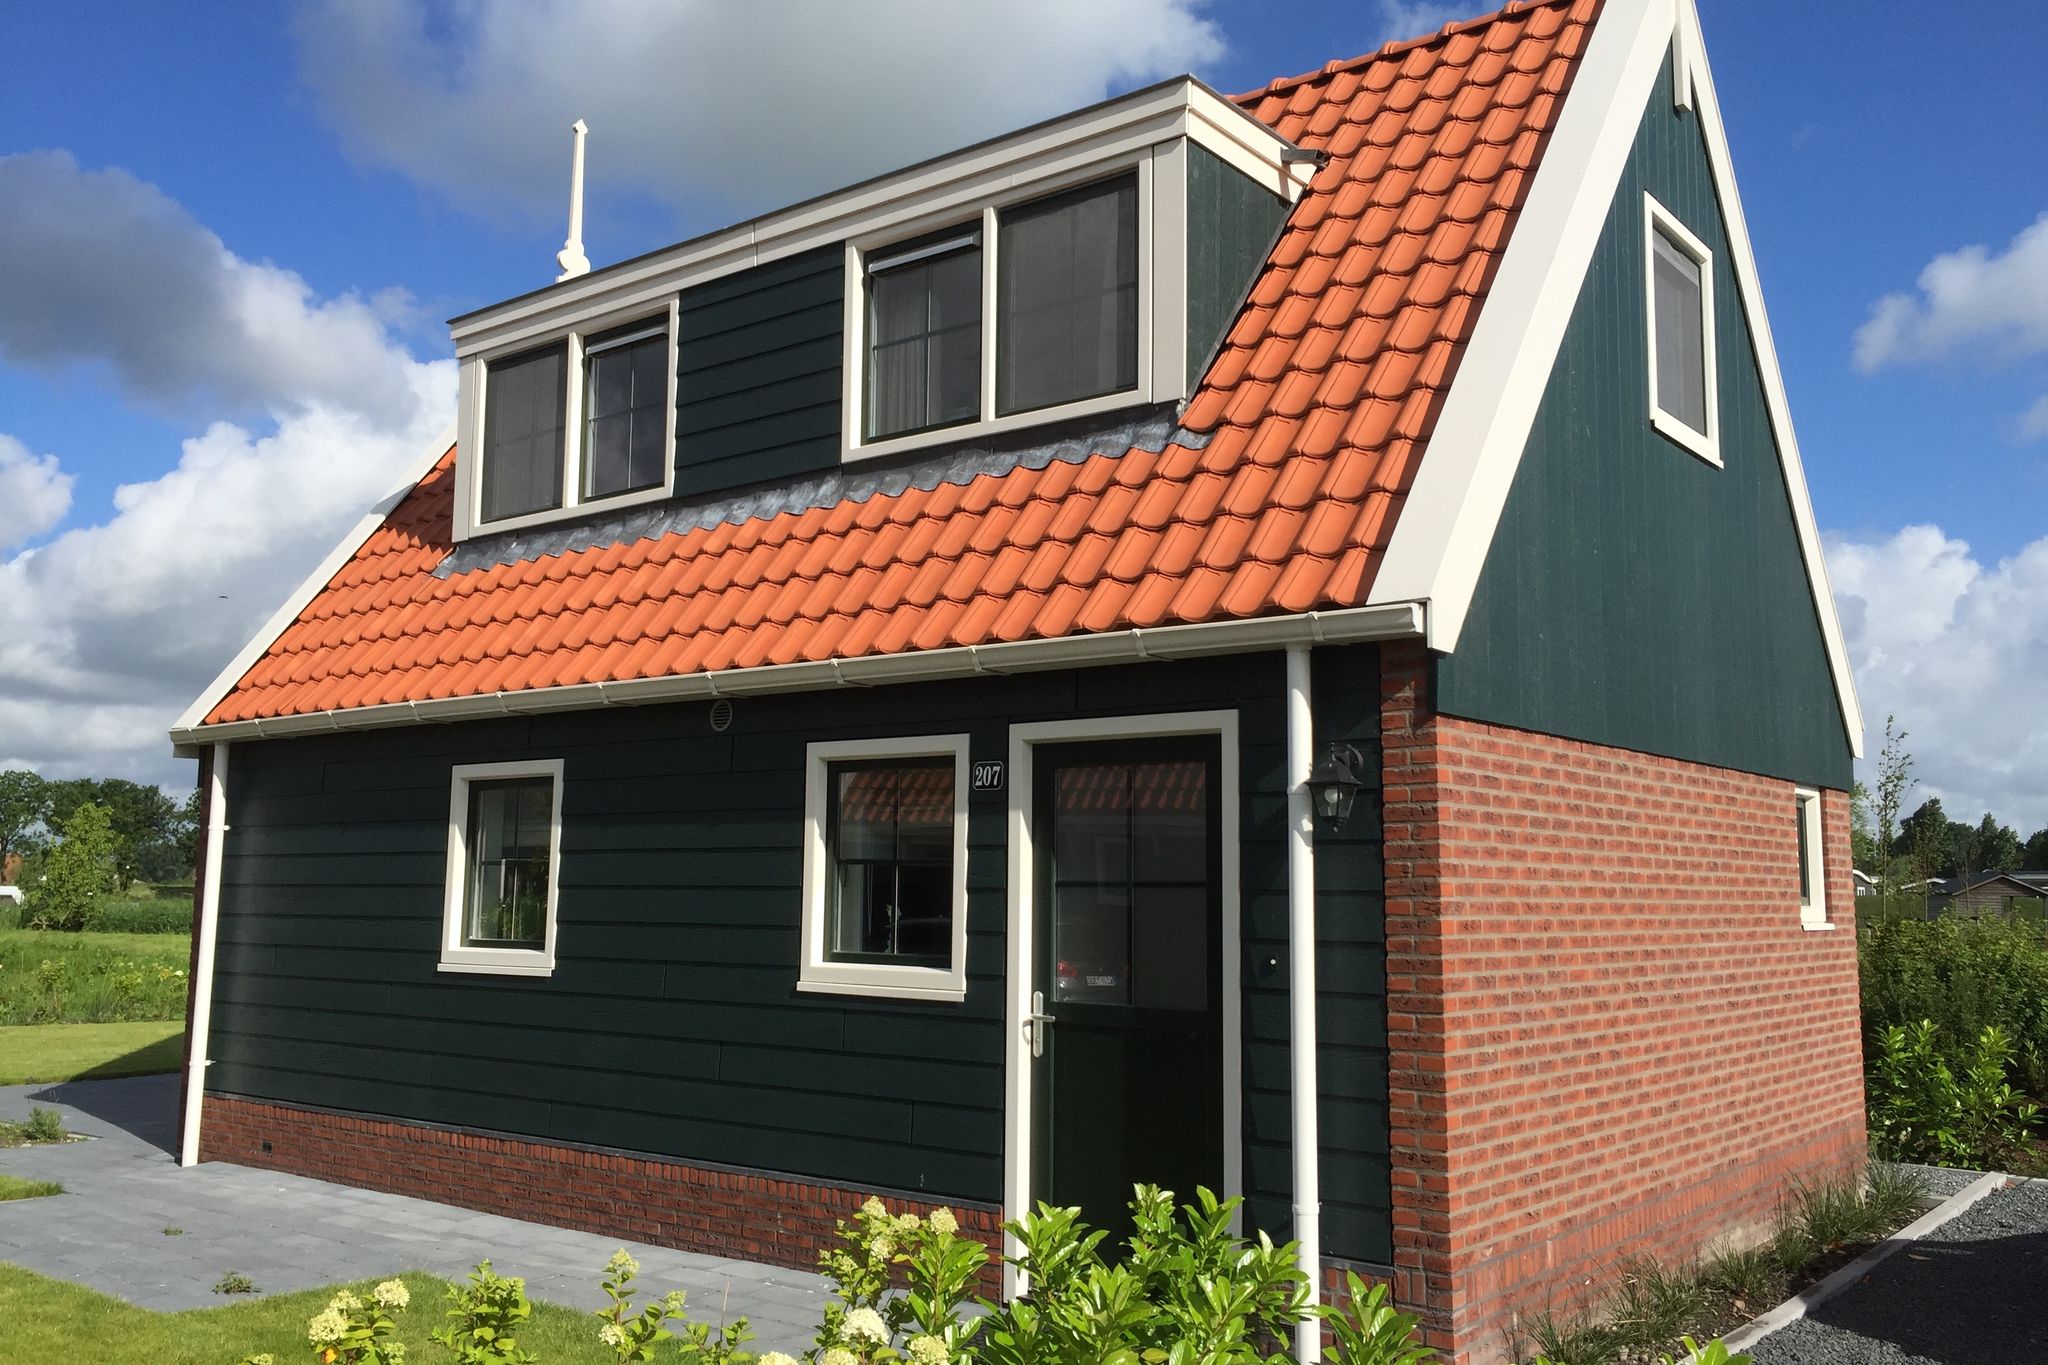 Maison de vacances de style Zaanse, à 15 km d'Alkmaar